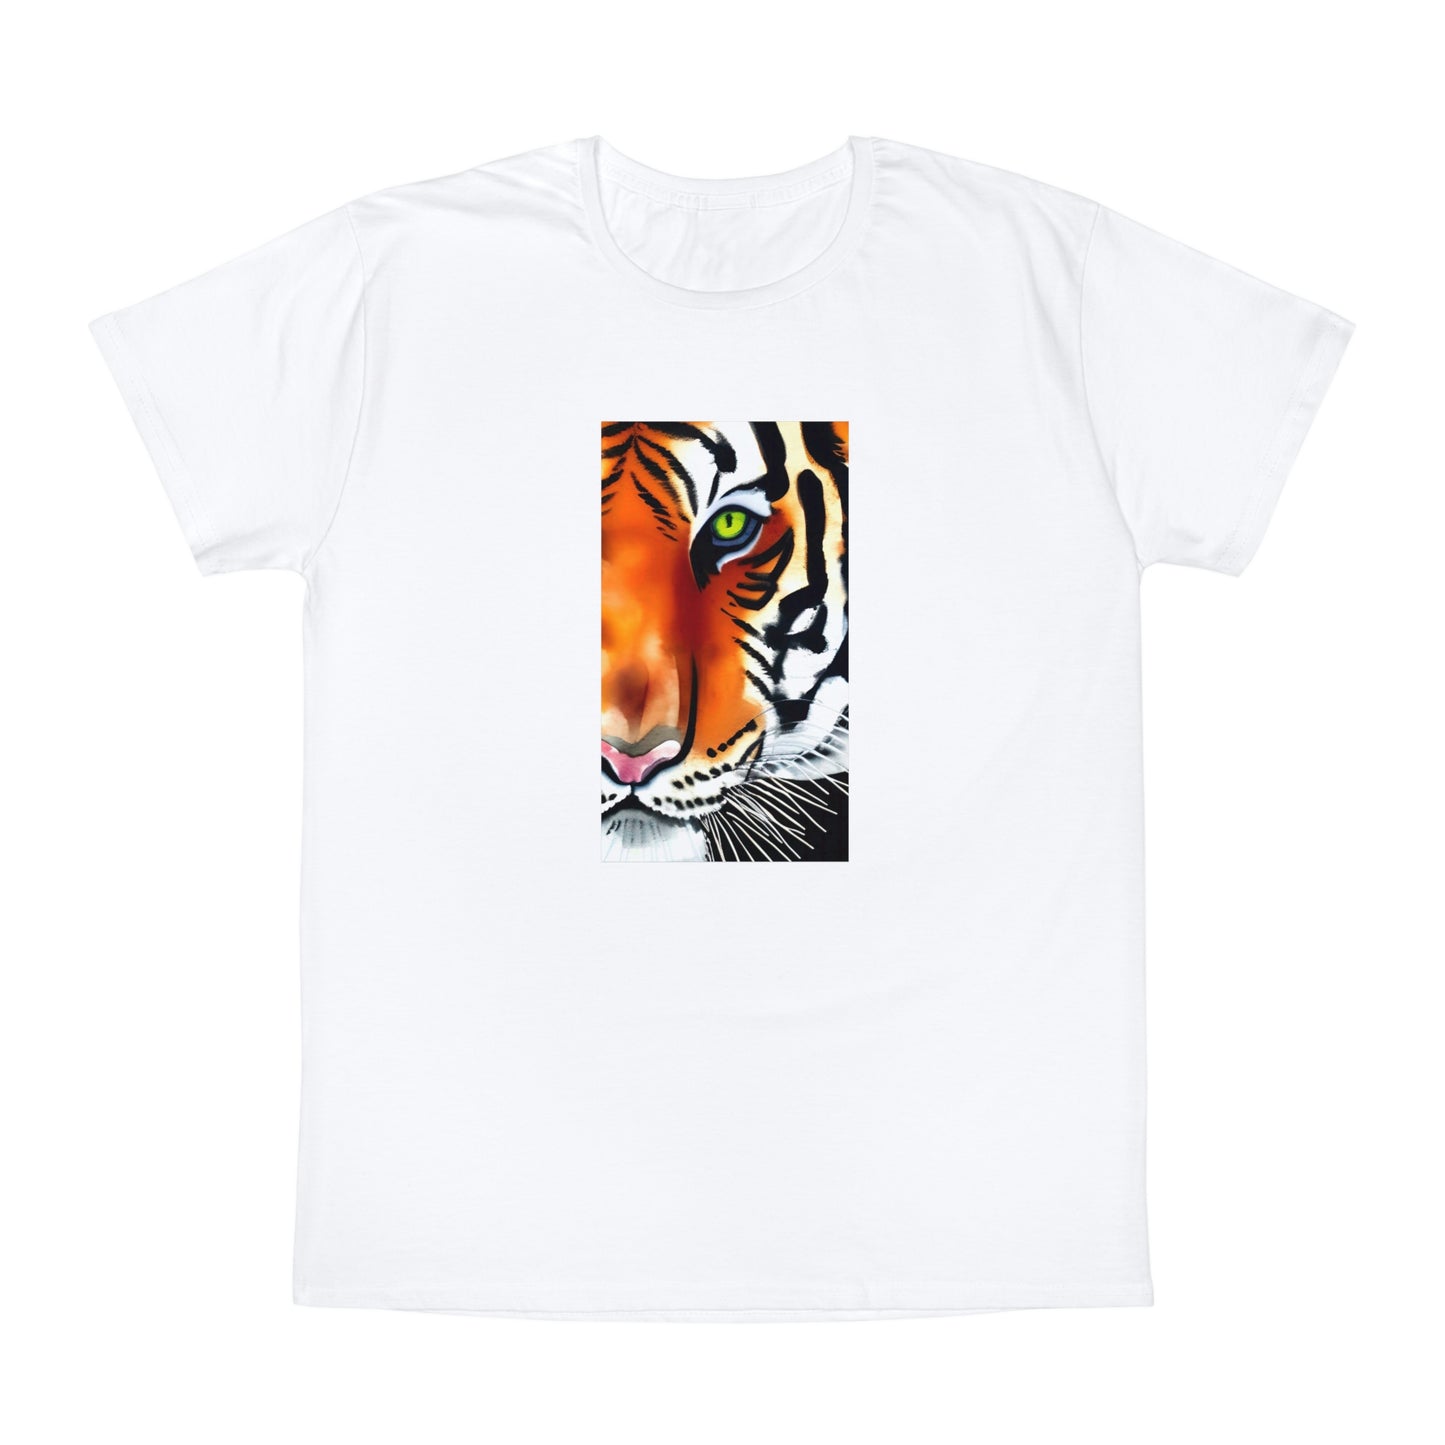 TIGER - Unisex Iconic T-Shirt